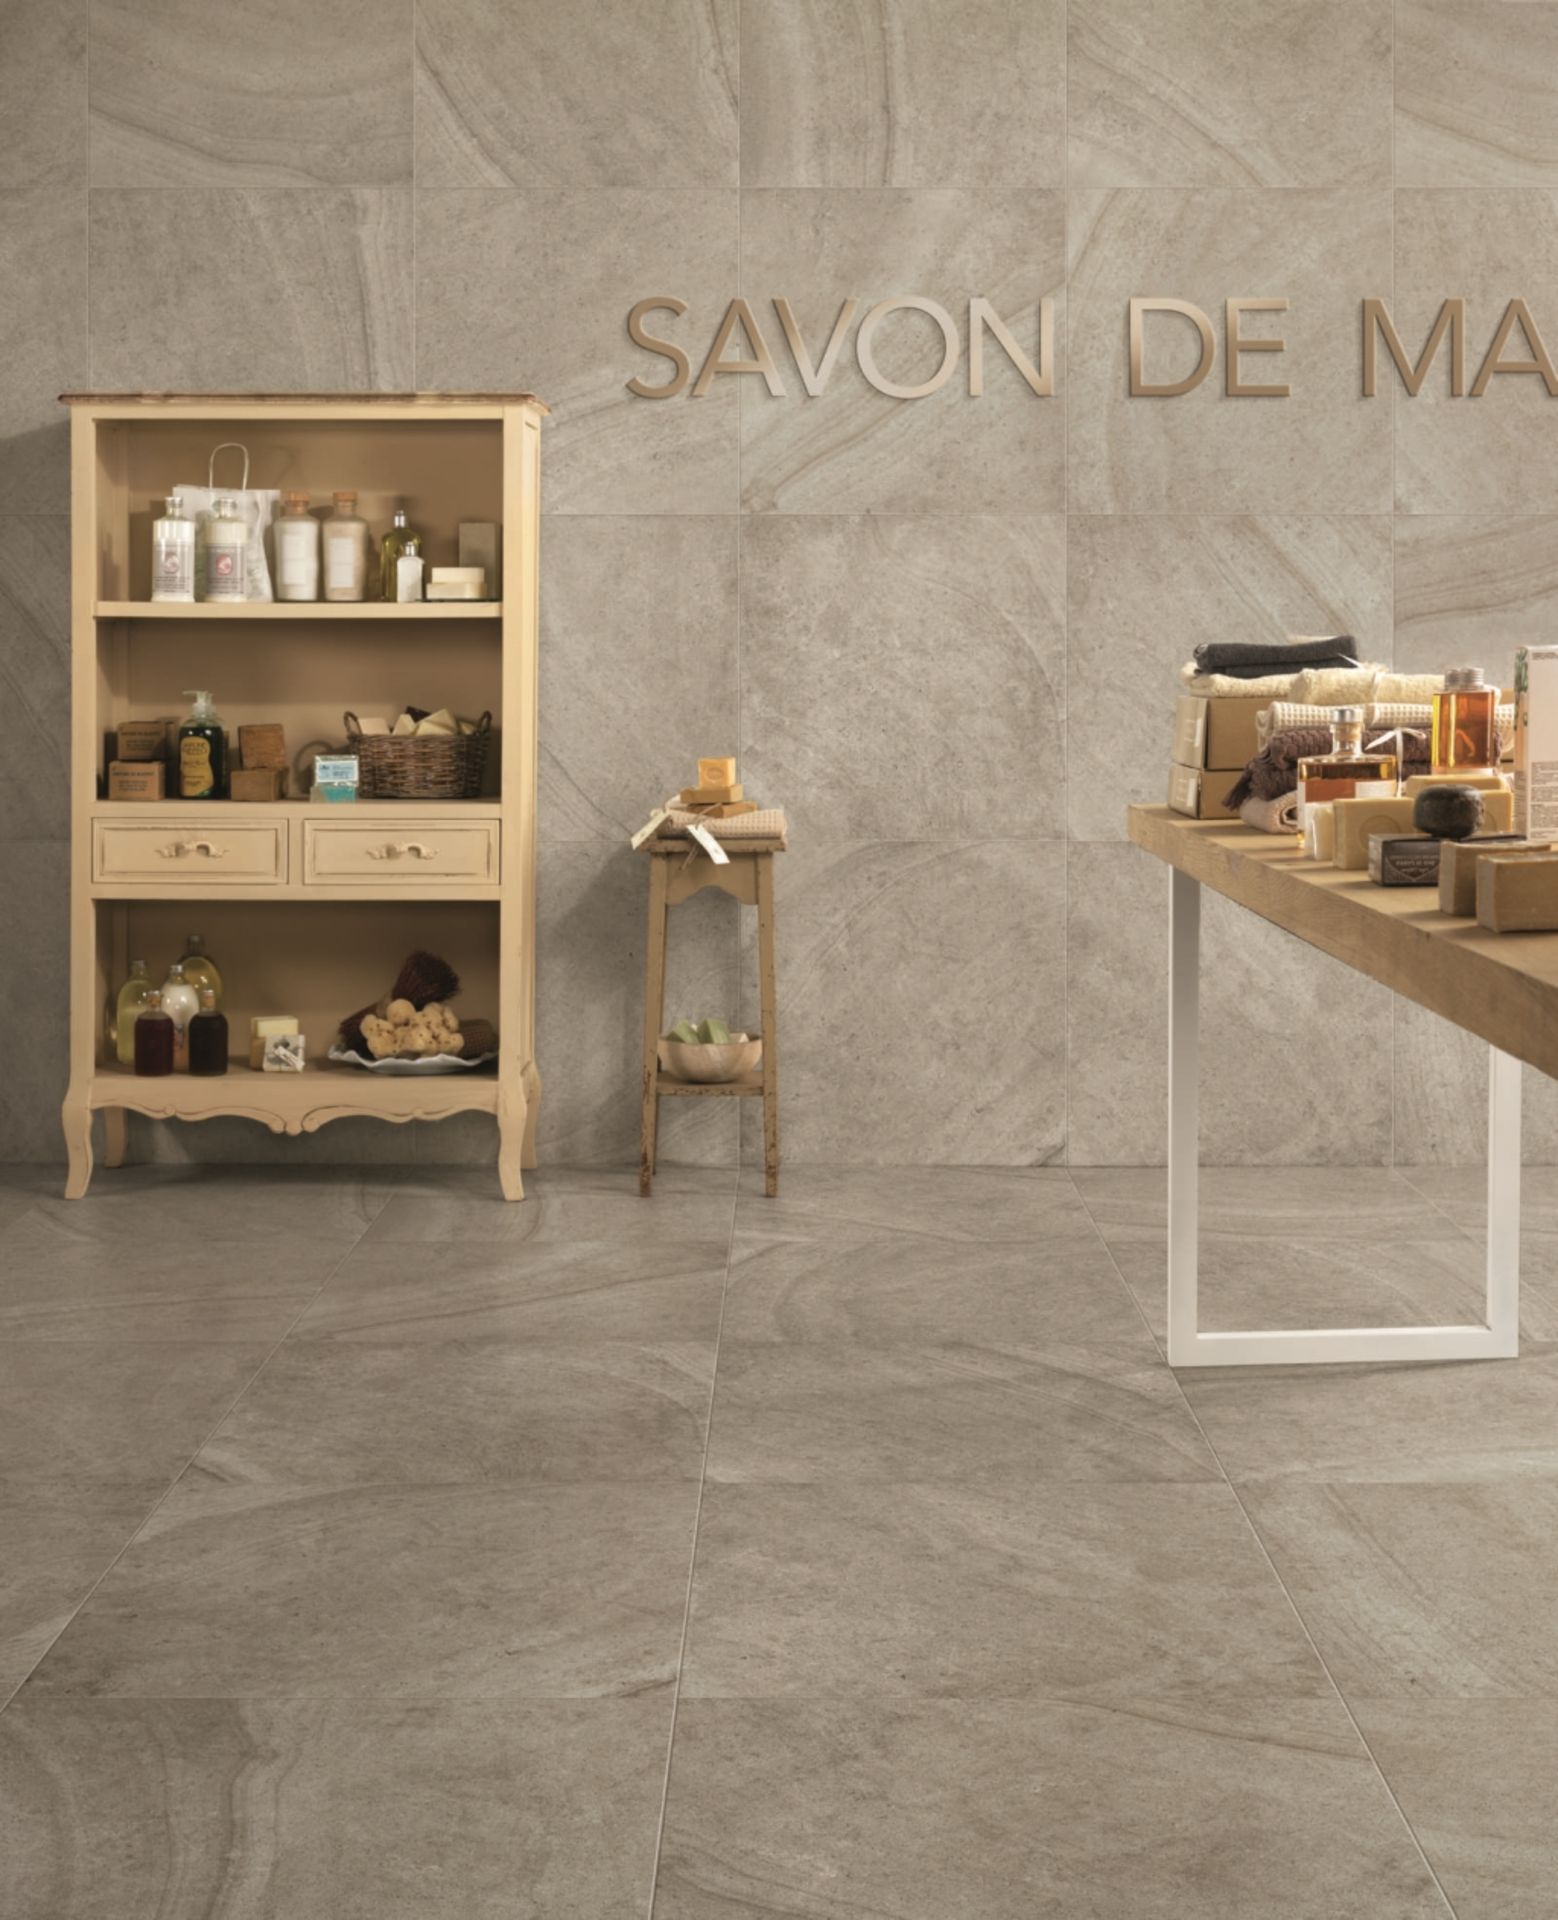 Maison Perle 8.5MM 60X30CM High Quality Italian Porcelain tiles 4 pallets - Image 3 of 3